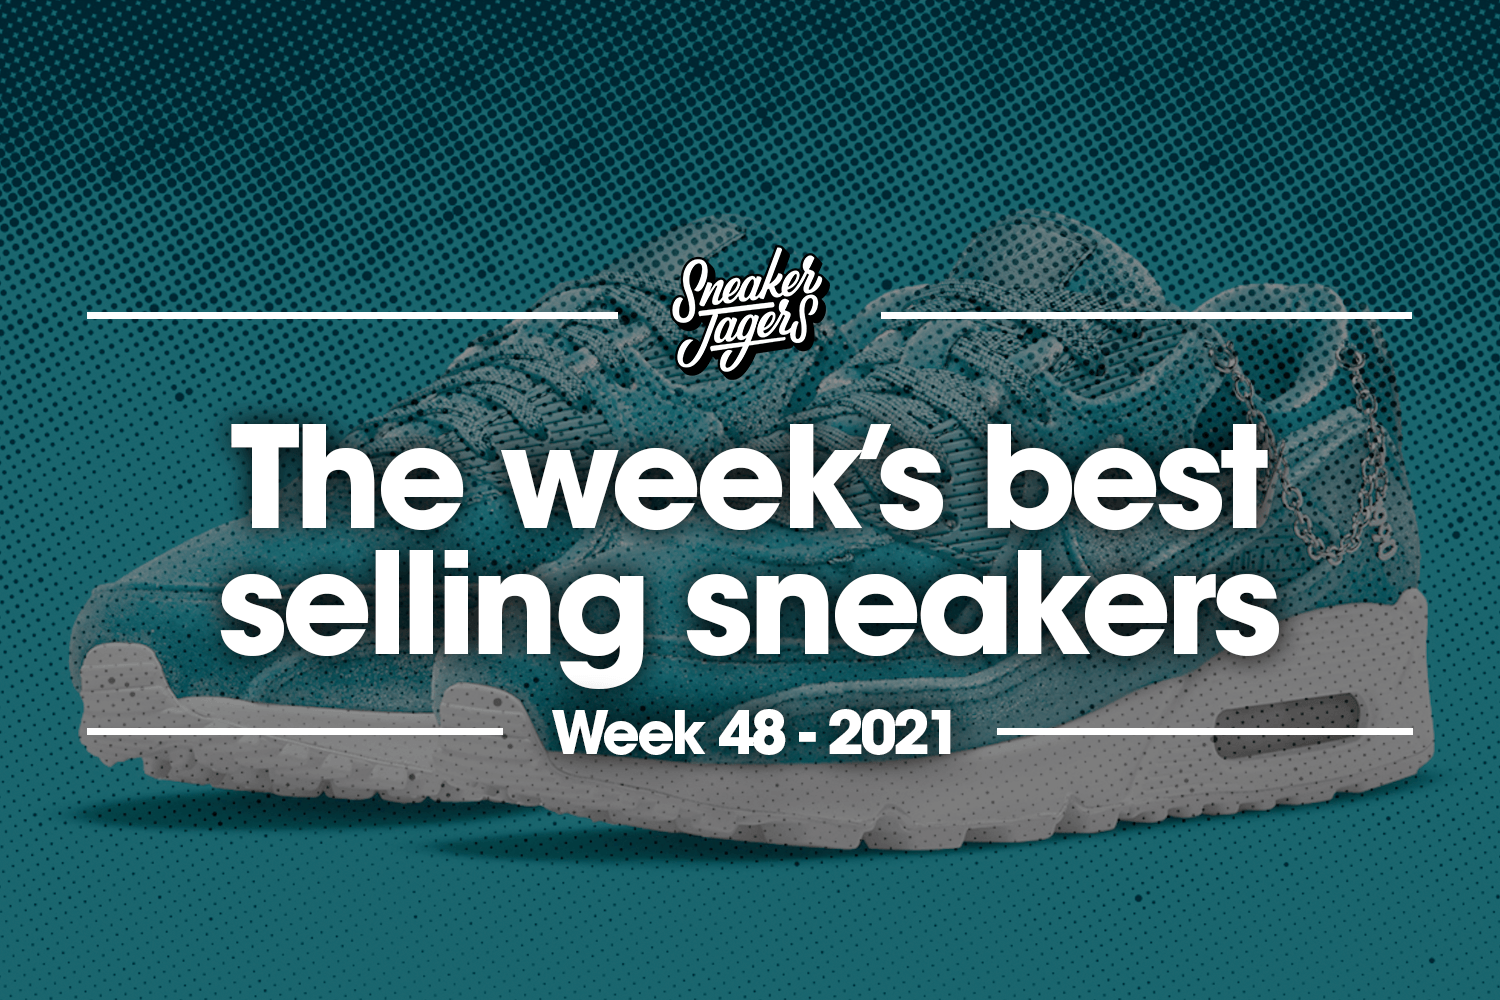 De 5 bestverkochte sneakers van week 48